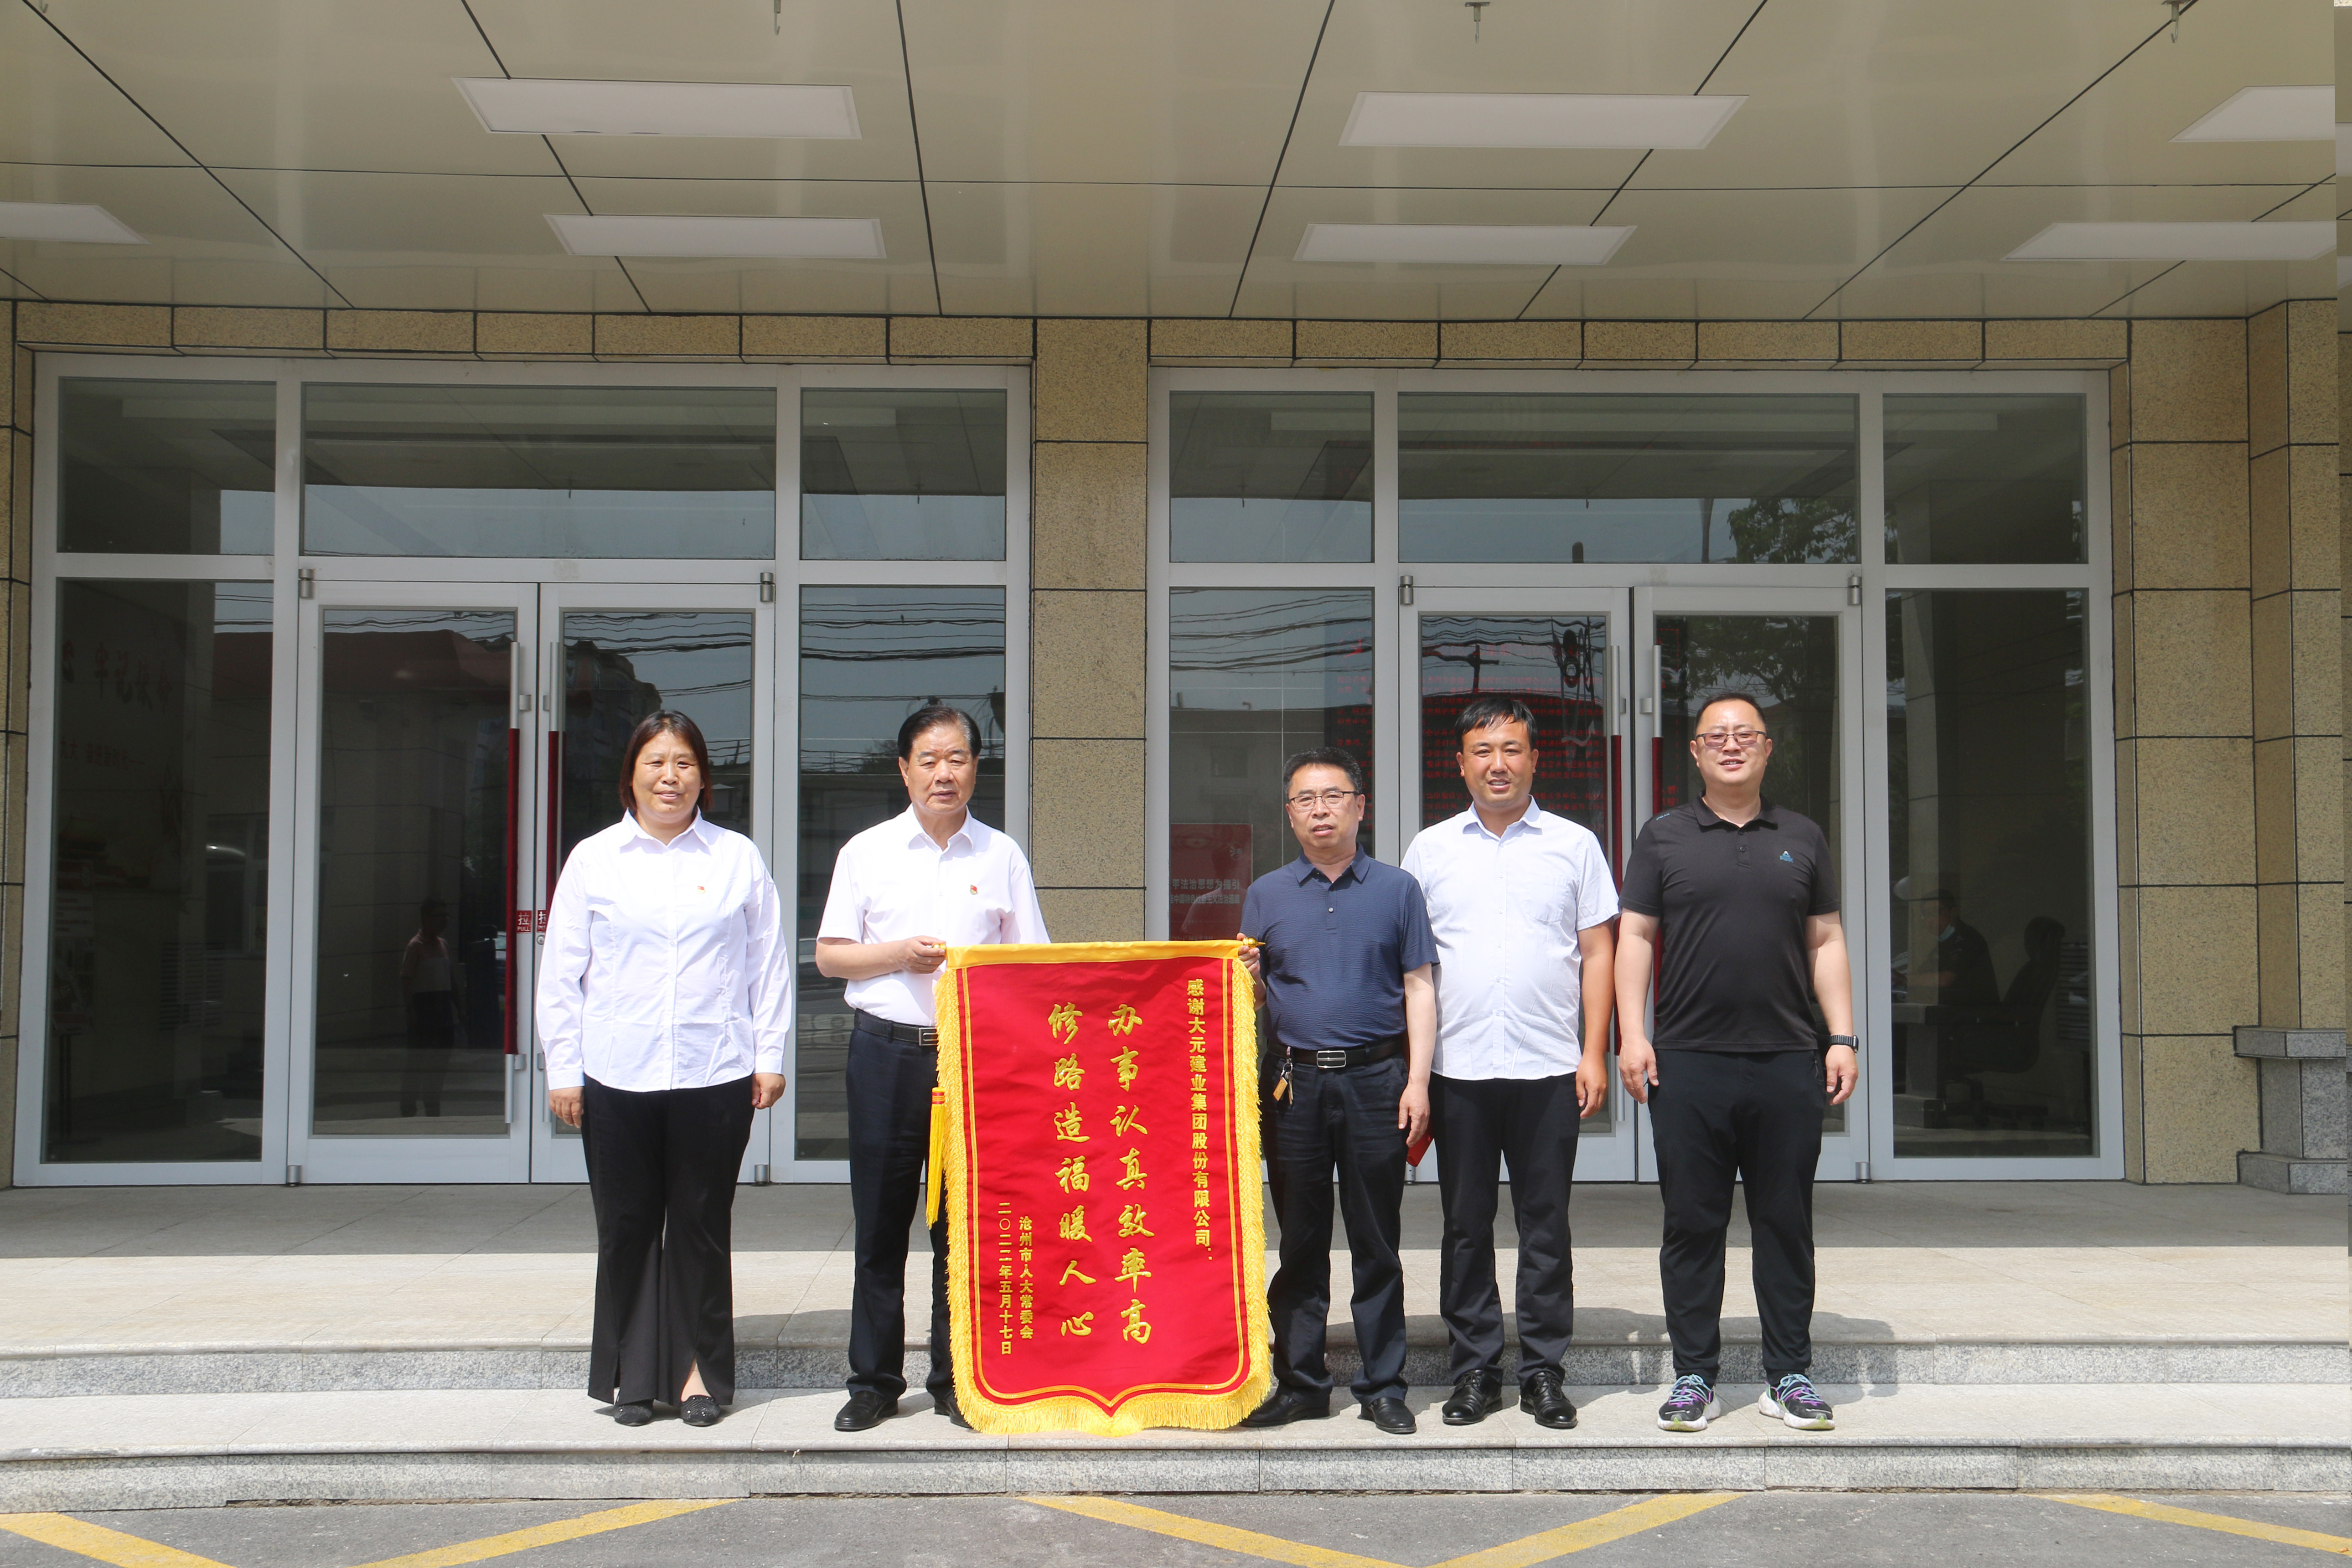 感谢信丨沧州市人大常务委员会代表向大元集团敬送锦旗及感谢信